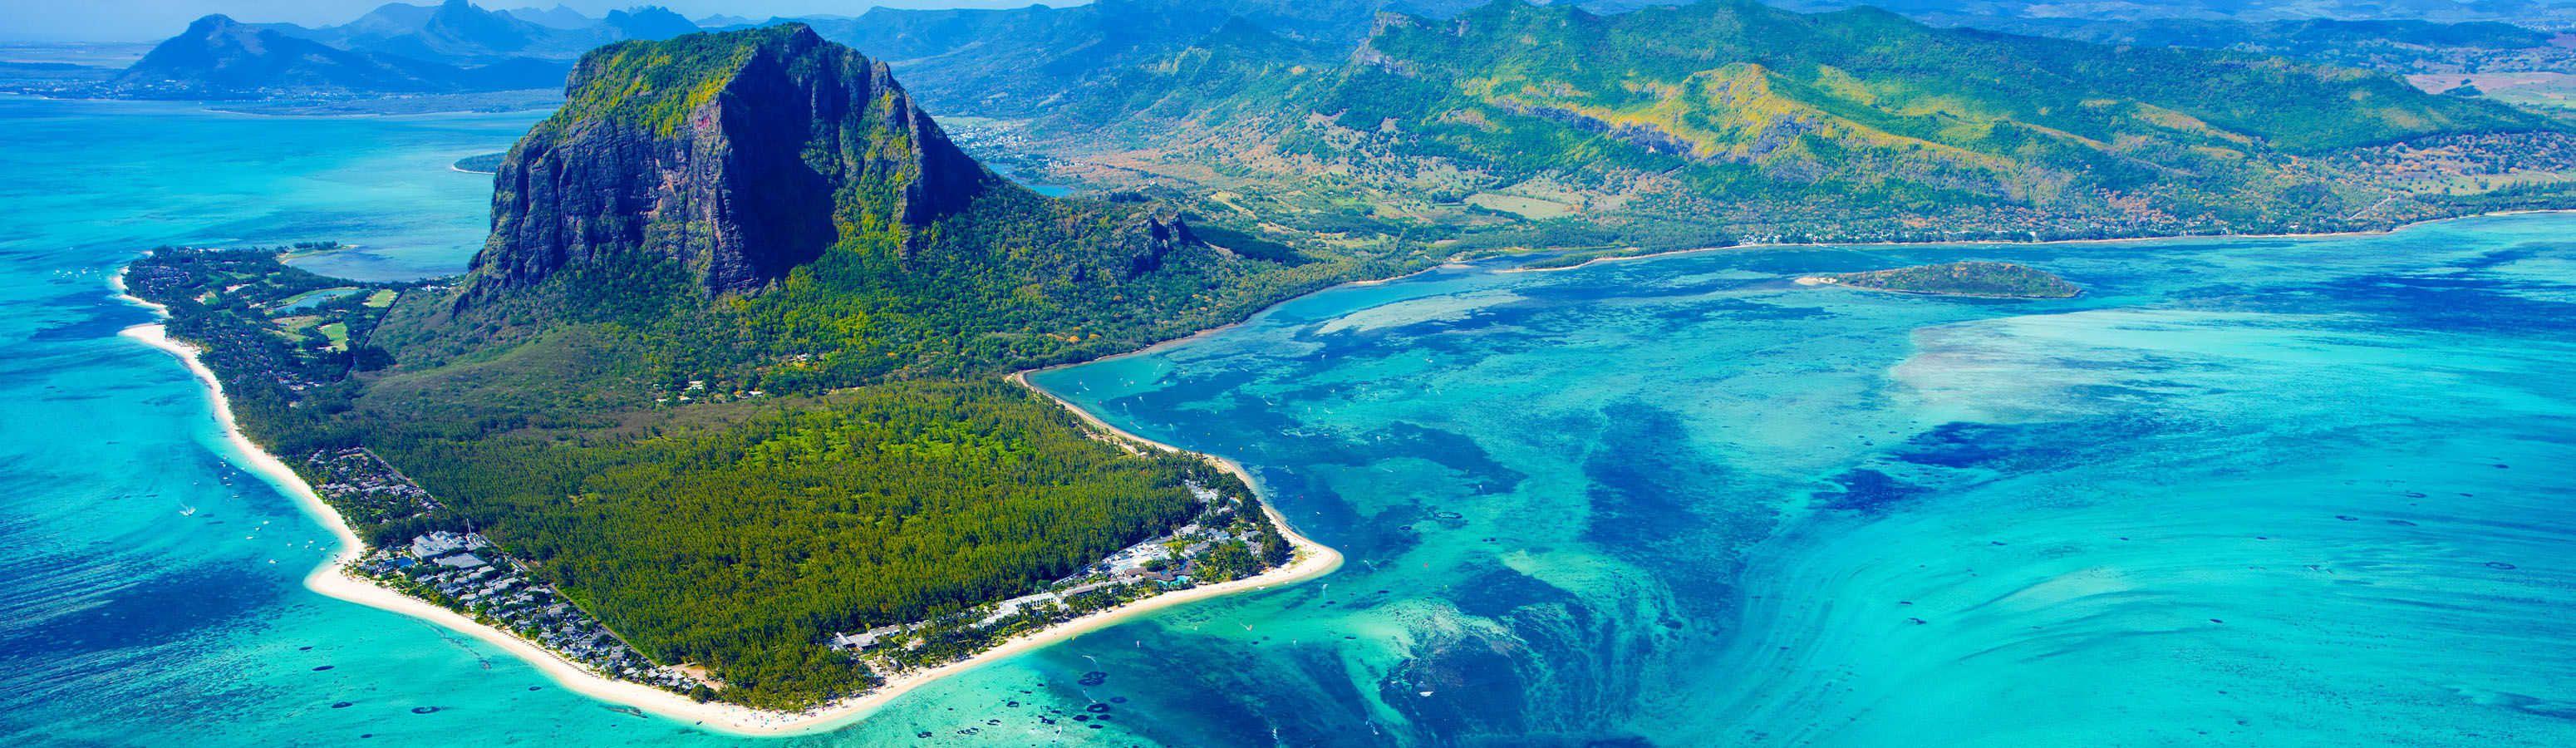 Repüljön el a valóságtól, repüljön Mauritiusra!